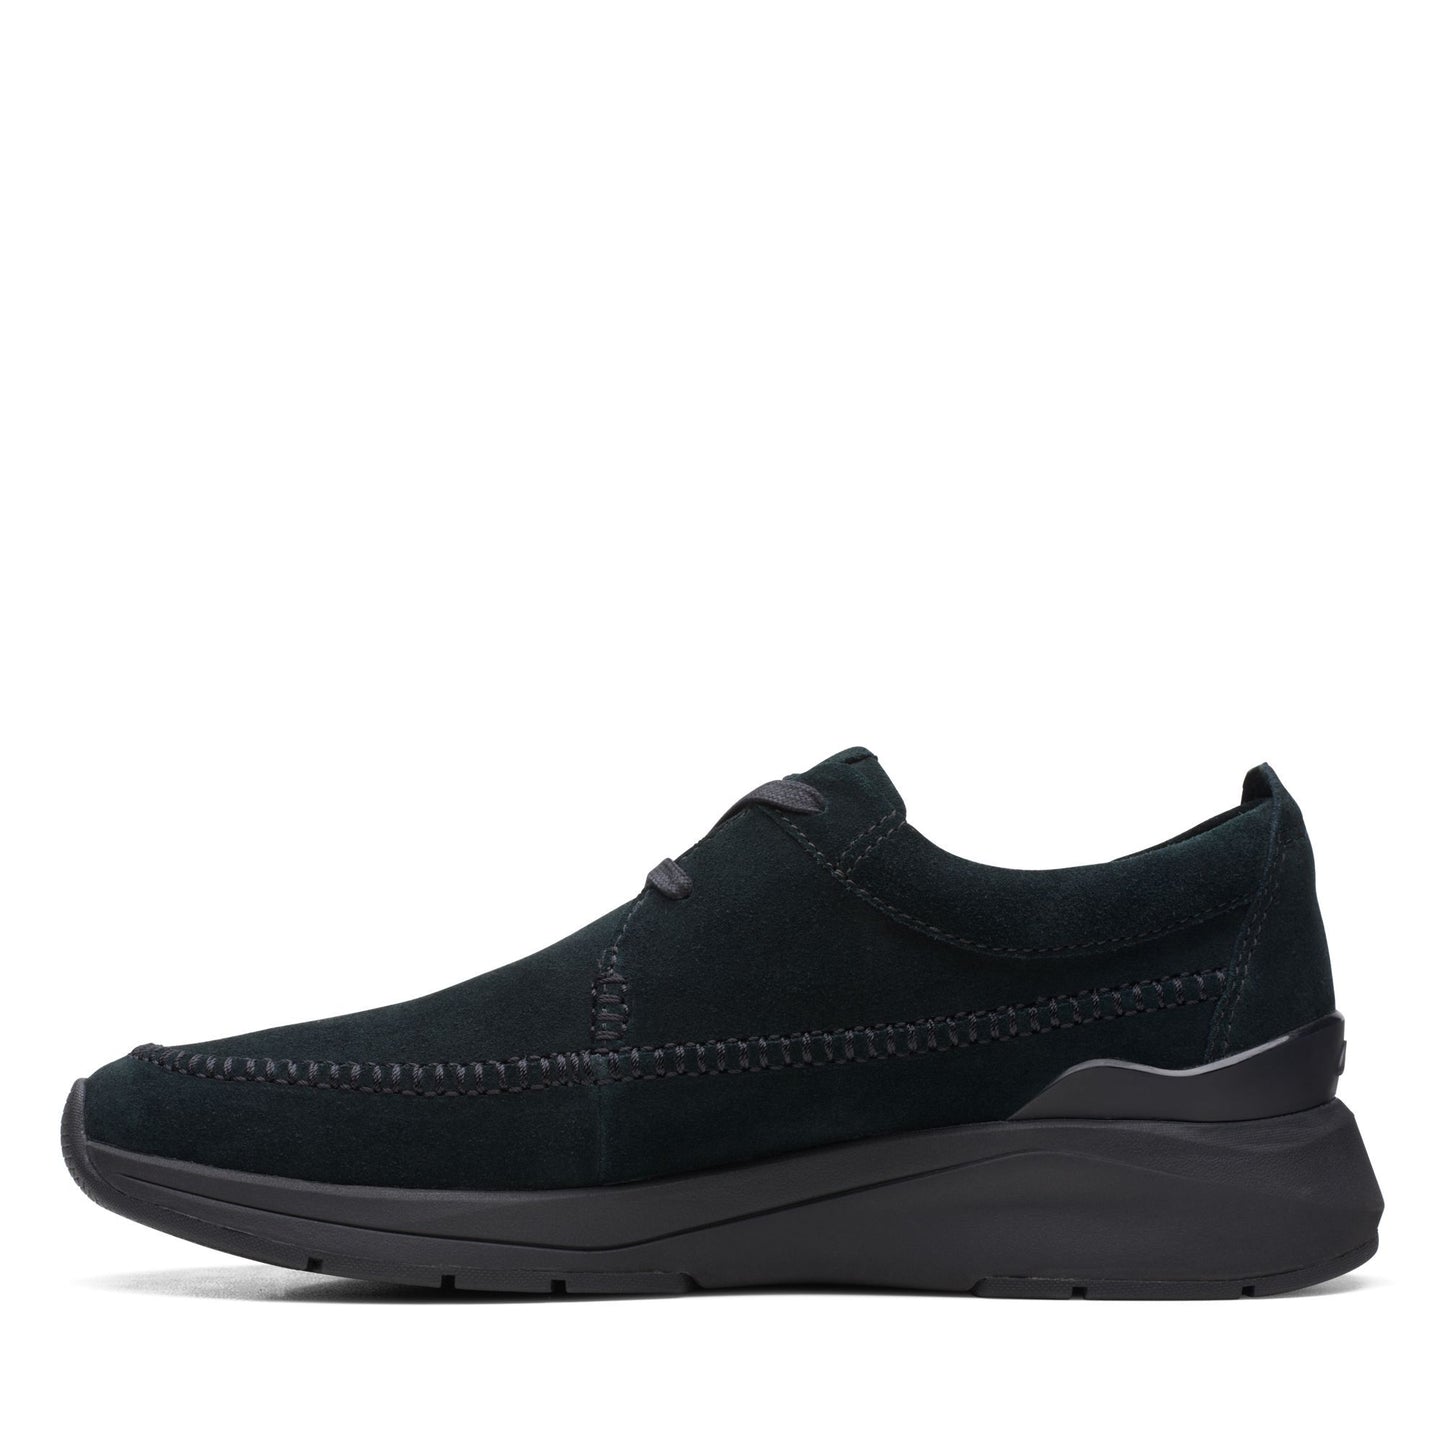 Zapatos Derby De La Marca Clarks Para Hombre Modelo Coastlite Weave Black Suede En Color Negro